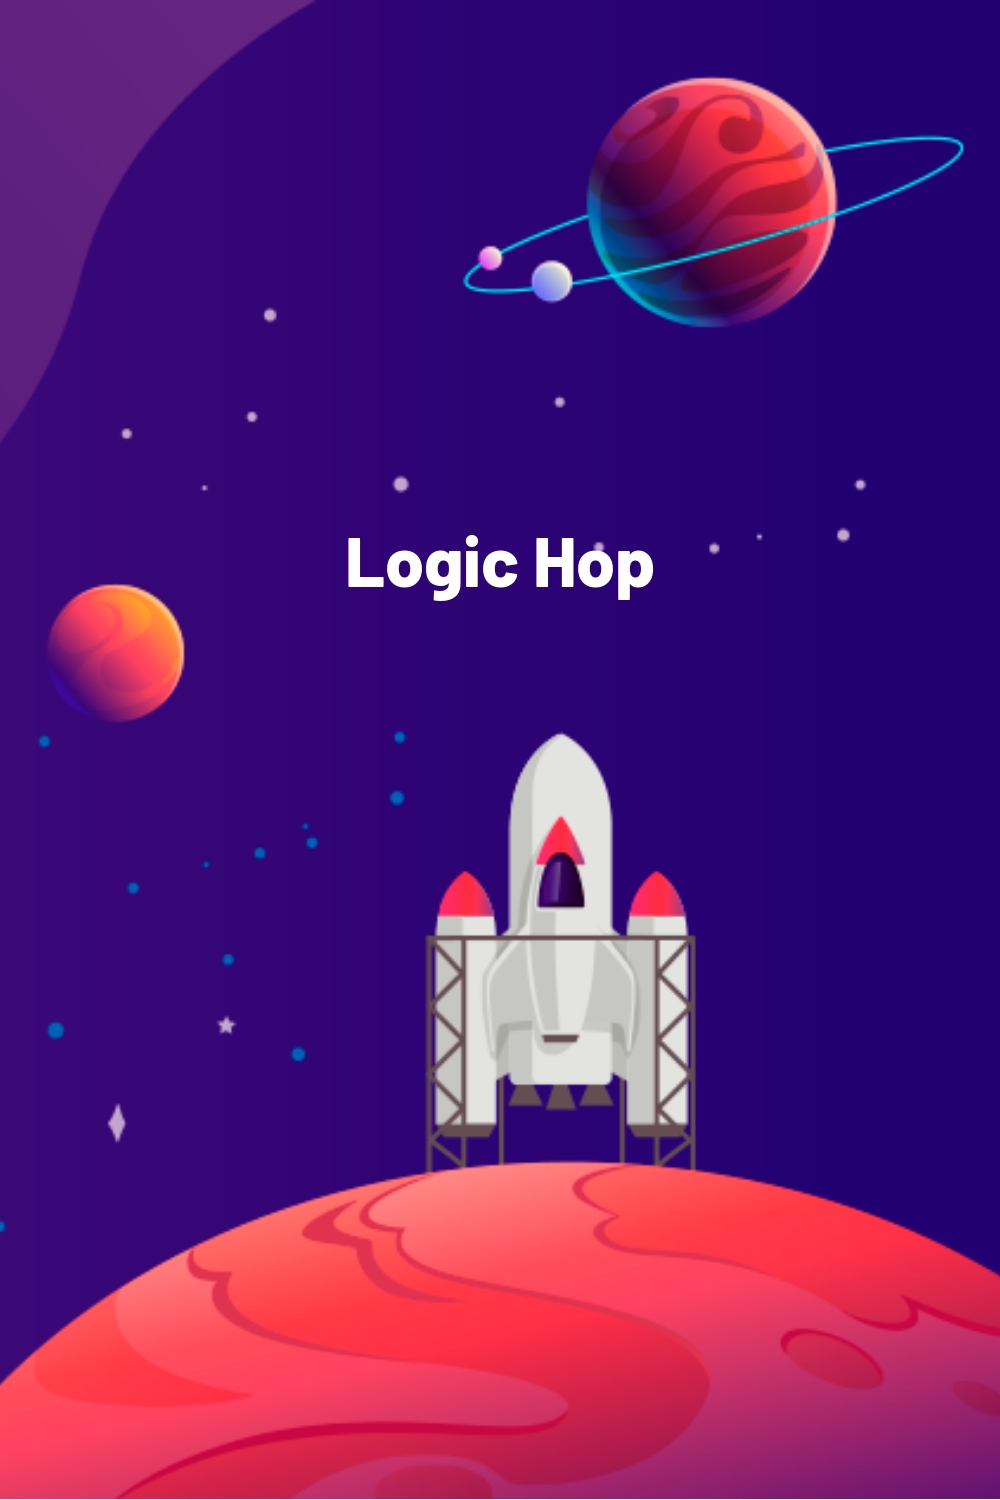 Logic Hop